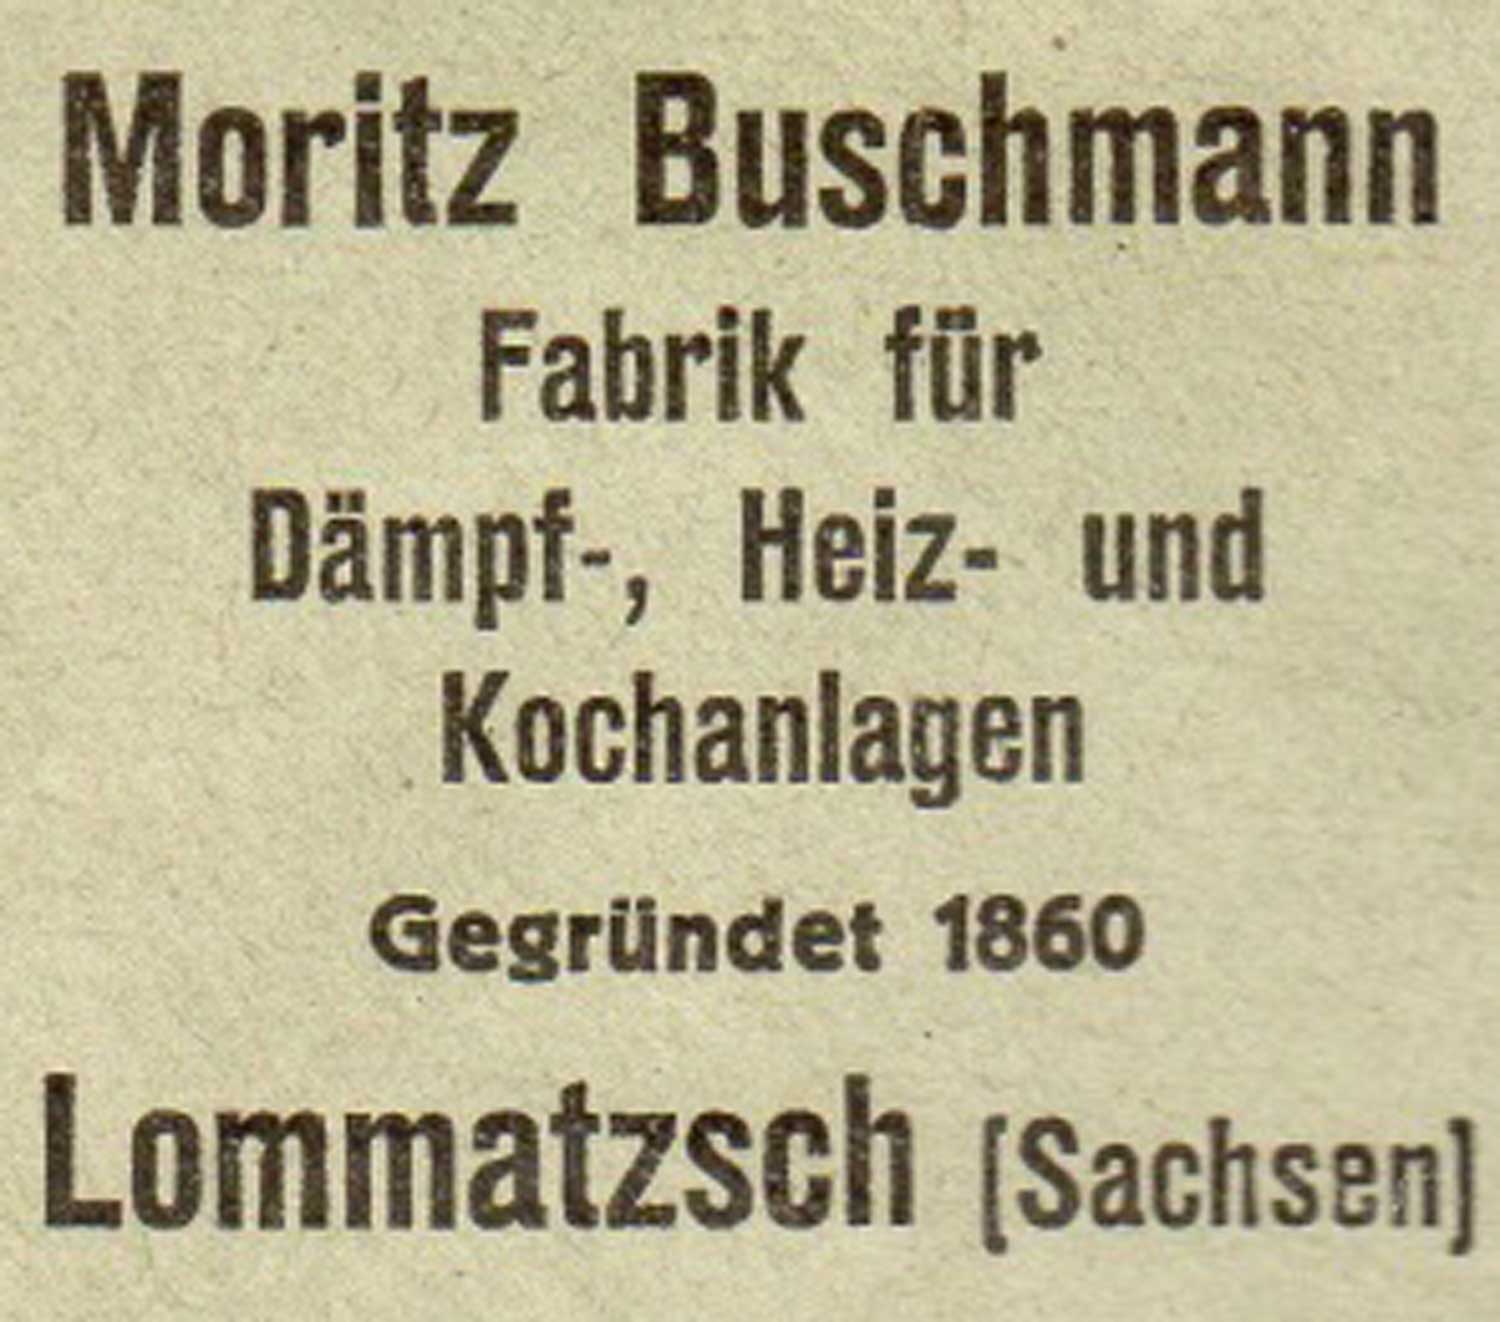 Moritz Buschmann, Spezialfabrik für Dämpf-, Heiz- und Kochanlagen